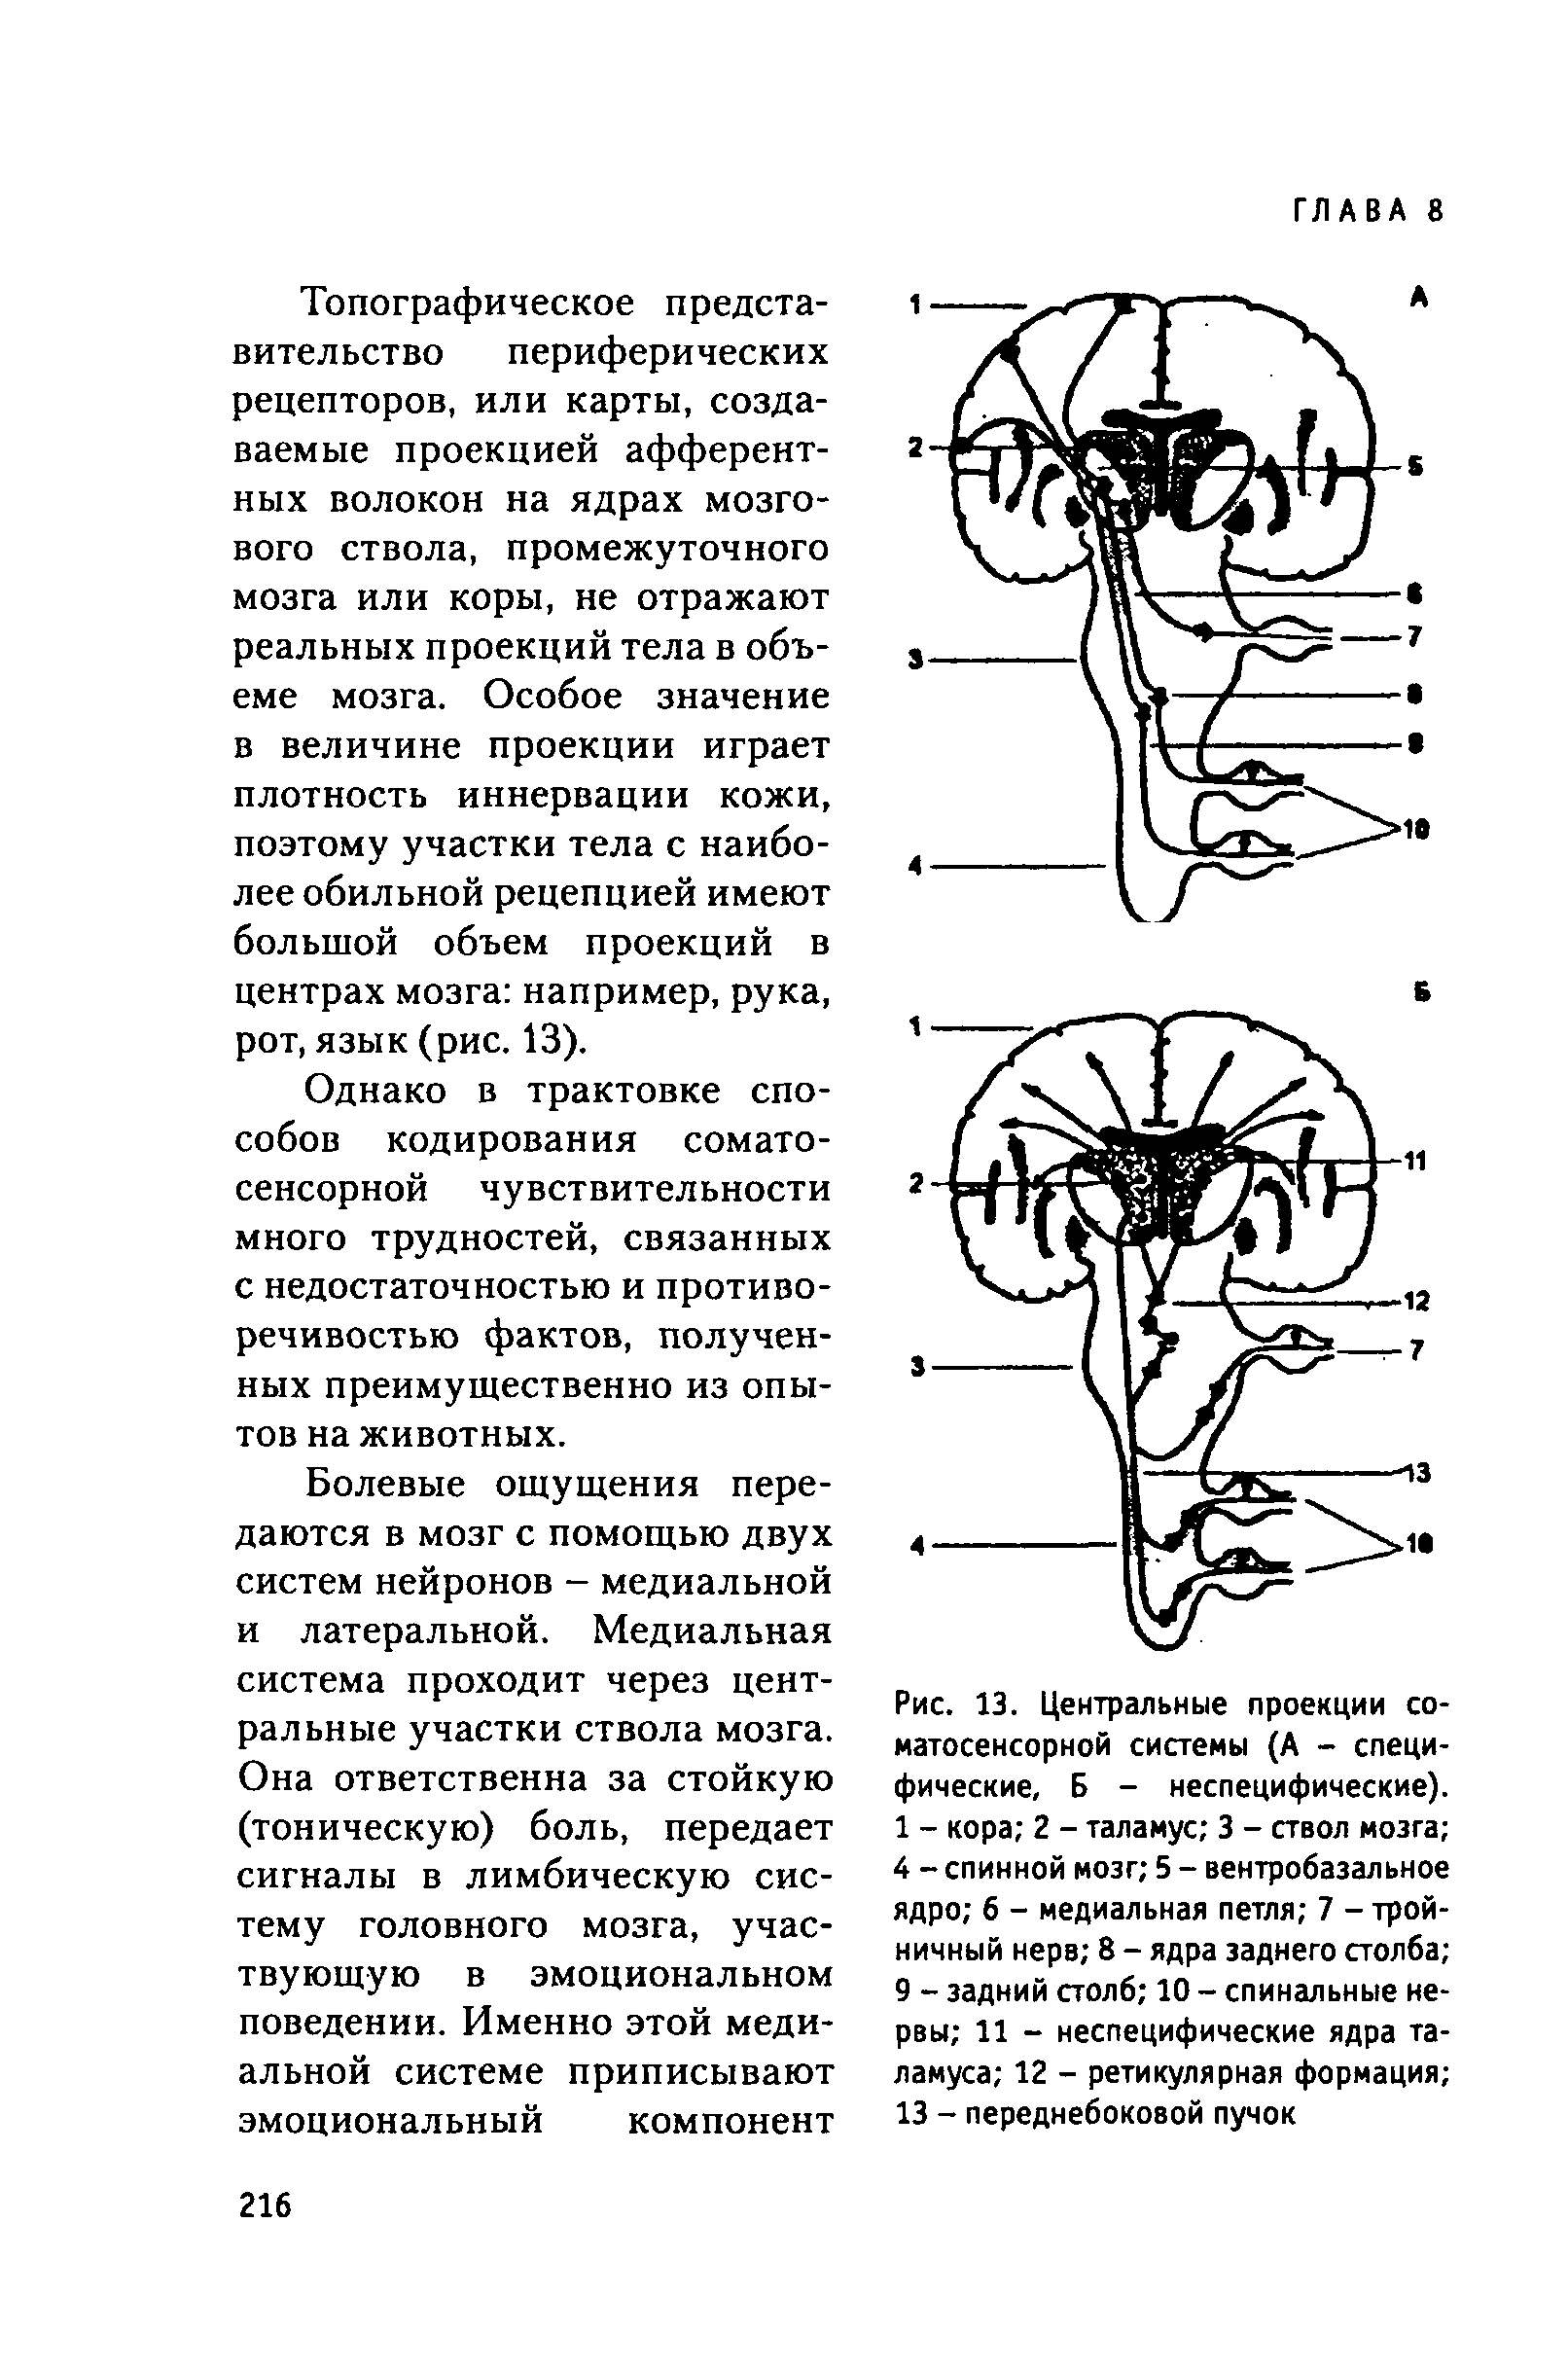 Рис. 13. Центральные проекции соматосенсорной системы (А - специфические, Б - неспецифические). 1 - кора 2 - таламус 3 - ствол мозга 4 - спинной мозг 5 - вентробазальное ядро б - медиальная петля 7 - тройничный нерв 8 - ядра заднего столба 9 - задний столб 10 - спинальные нервы 11 - неспецифические ядра таламуса 12 - ретикулярная формация 13 - переднебоковой пучок...